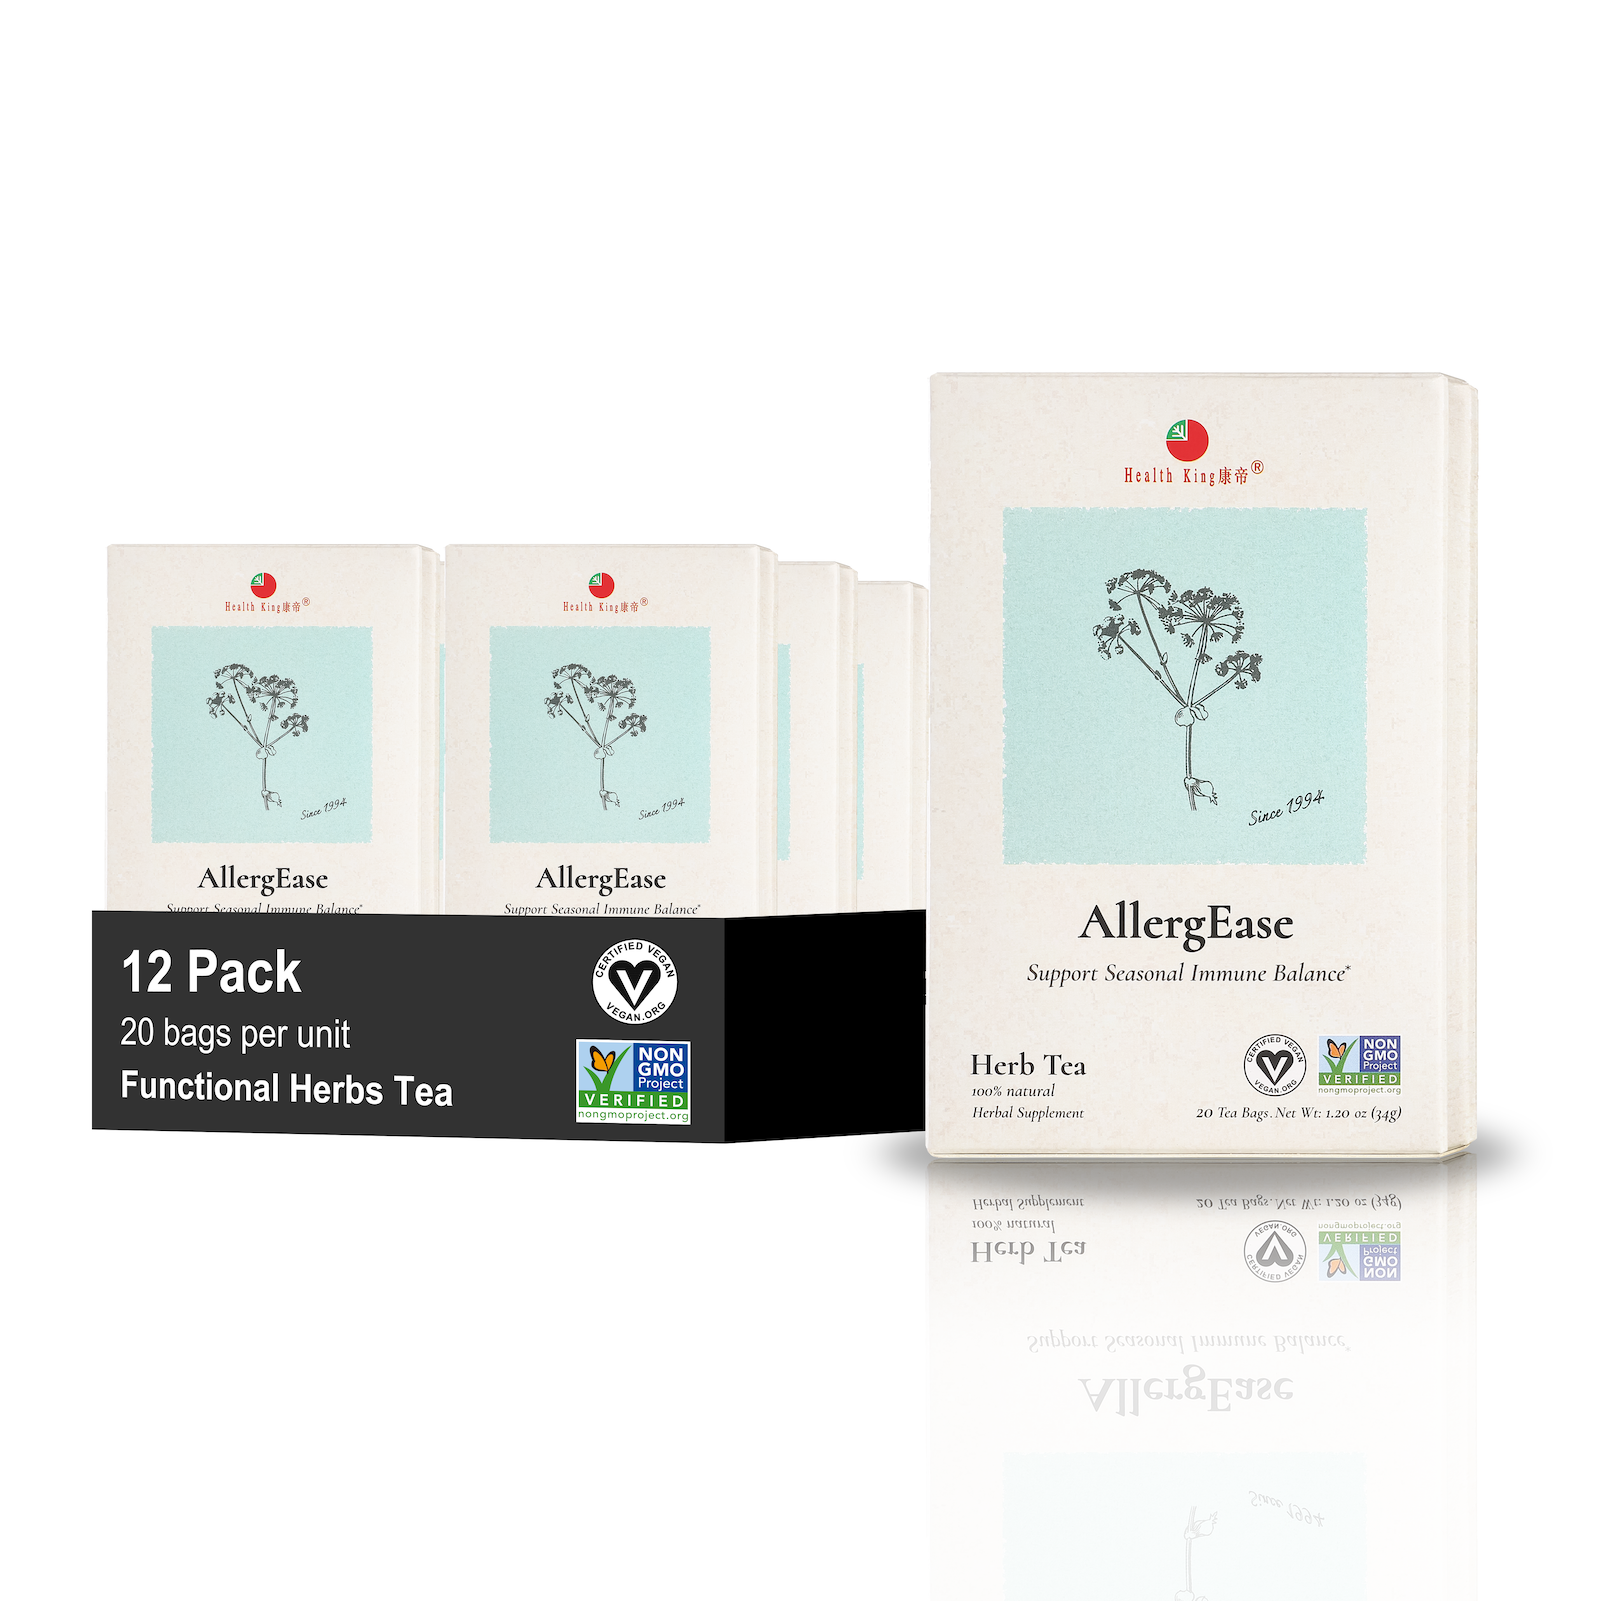 Twelve-pack of AllergEase Herb Tea featuring aloe vera